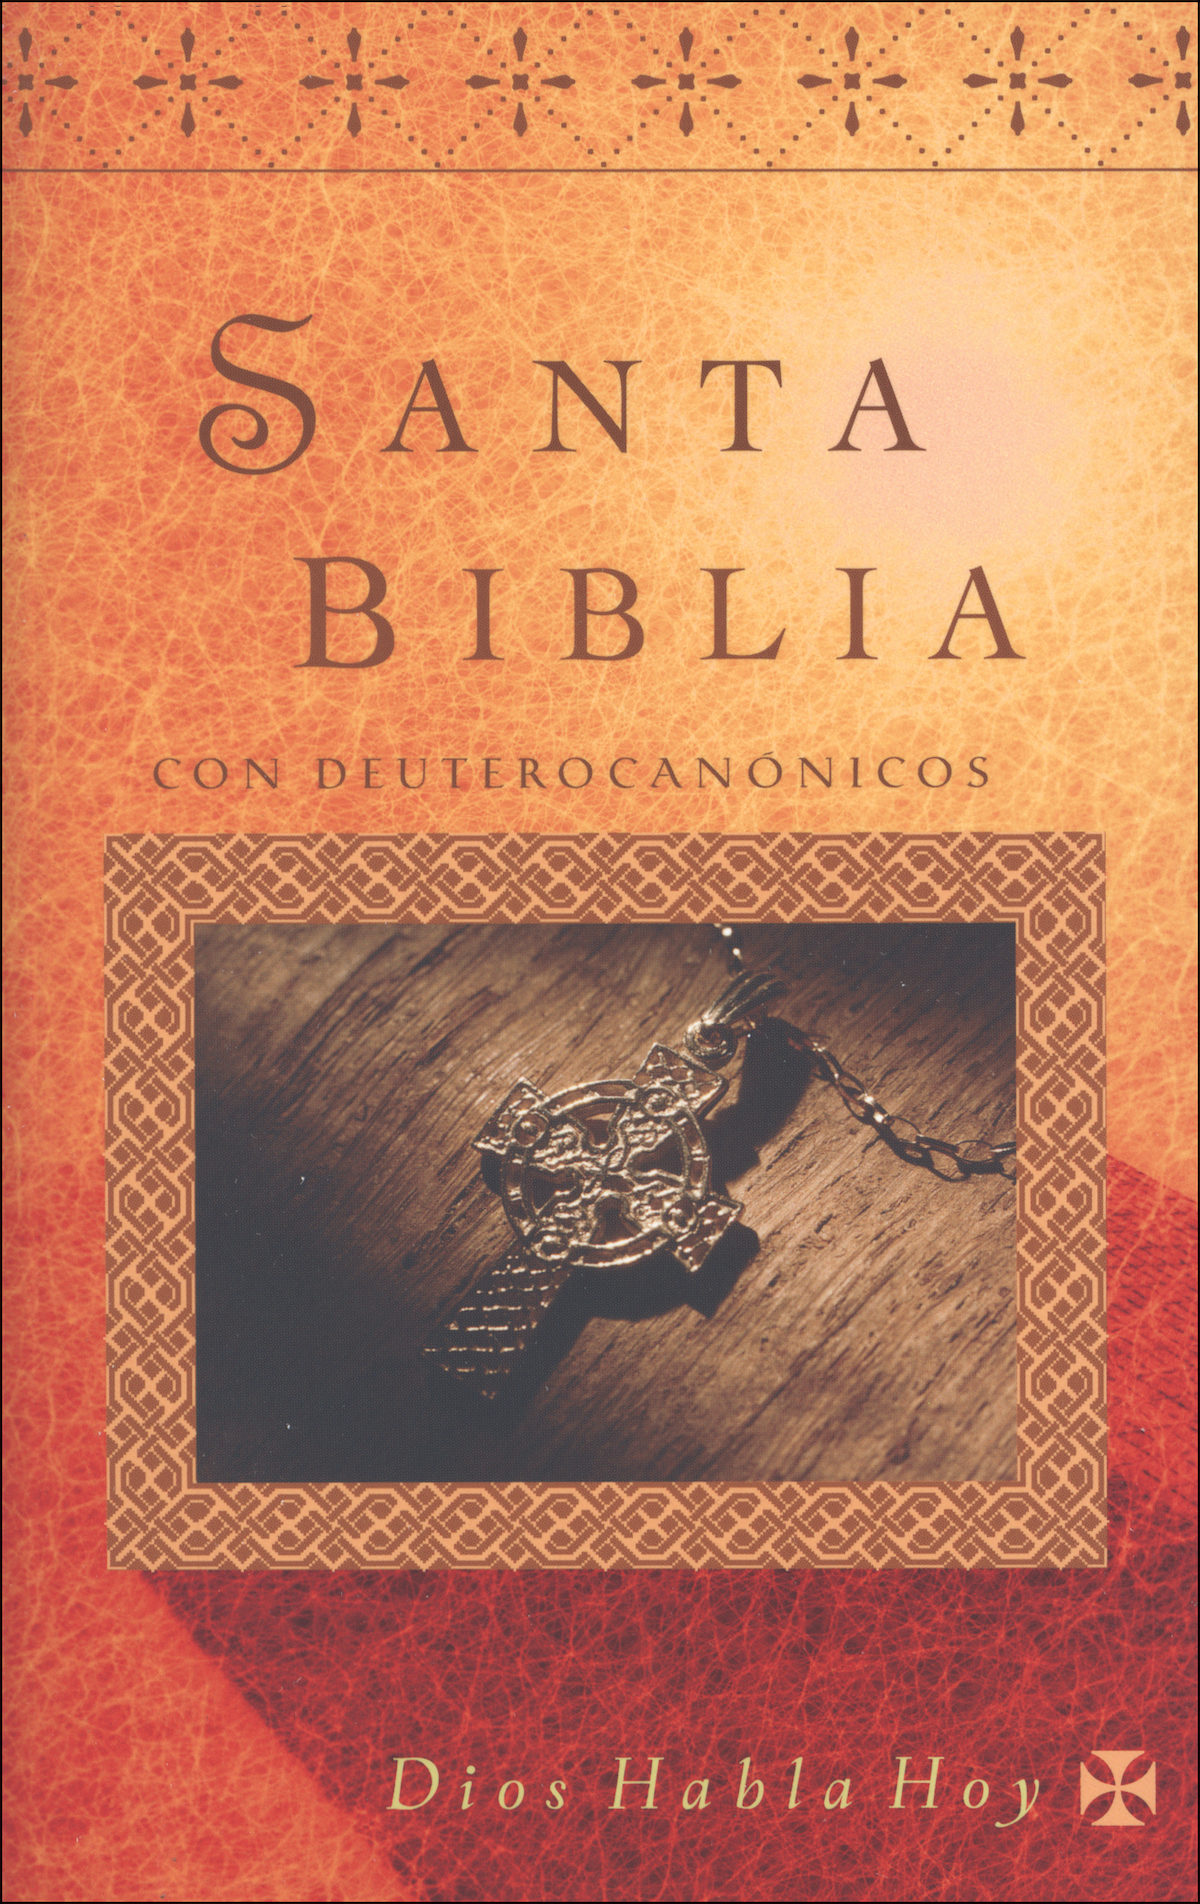 Barcelona sueño a nombre de Dios Habla Hoy, 2nd Edition, Santa Biblia con Deuterocanonicos, softc…